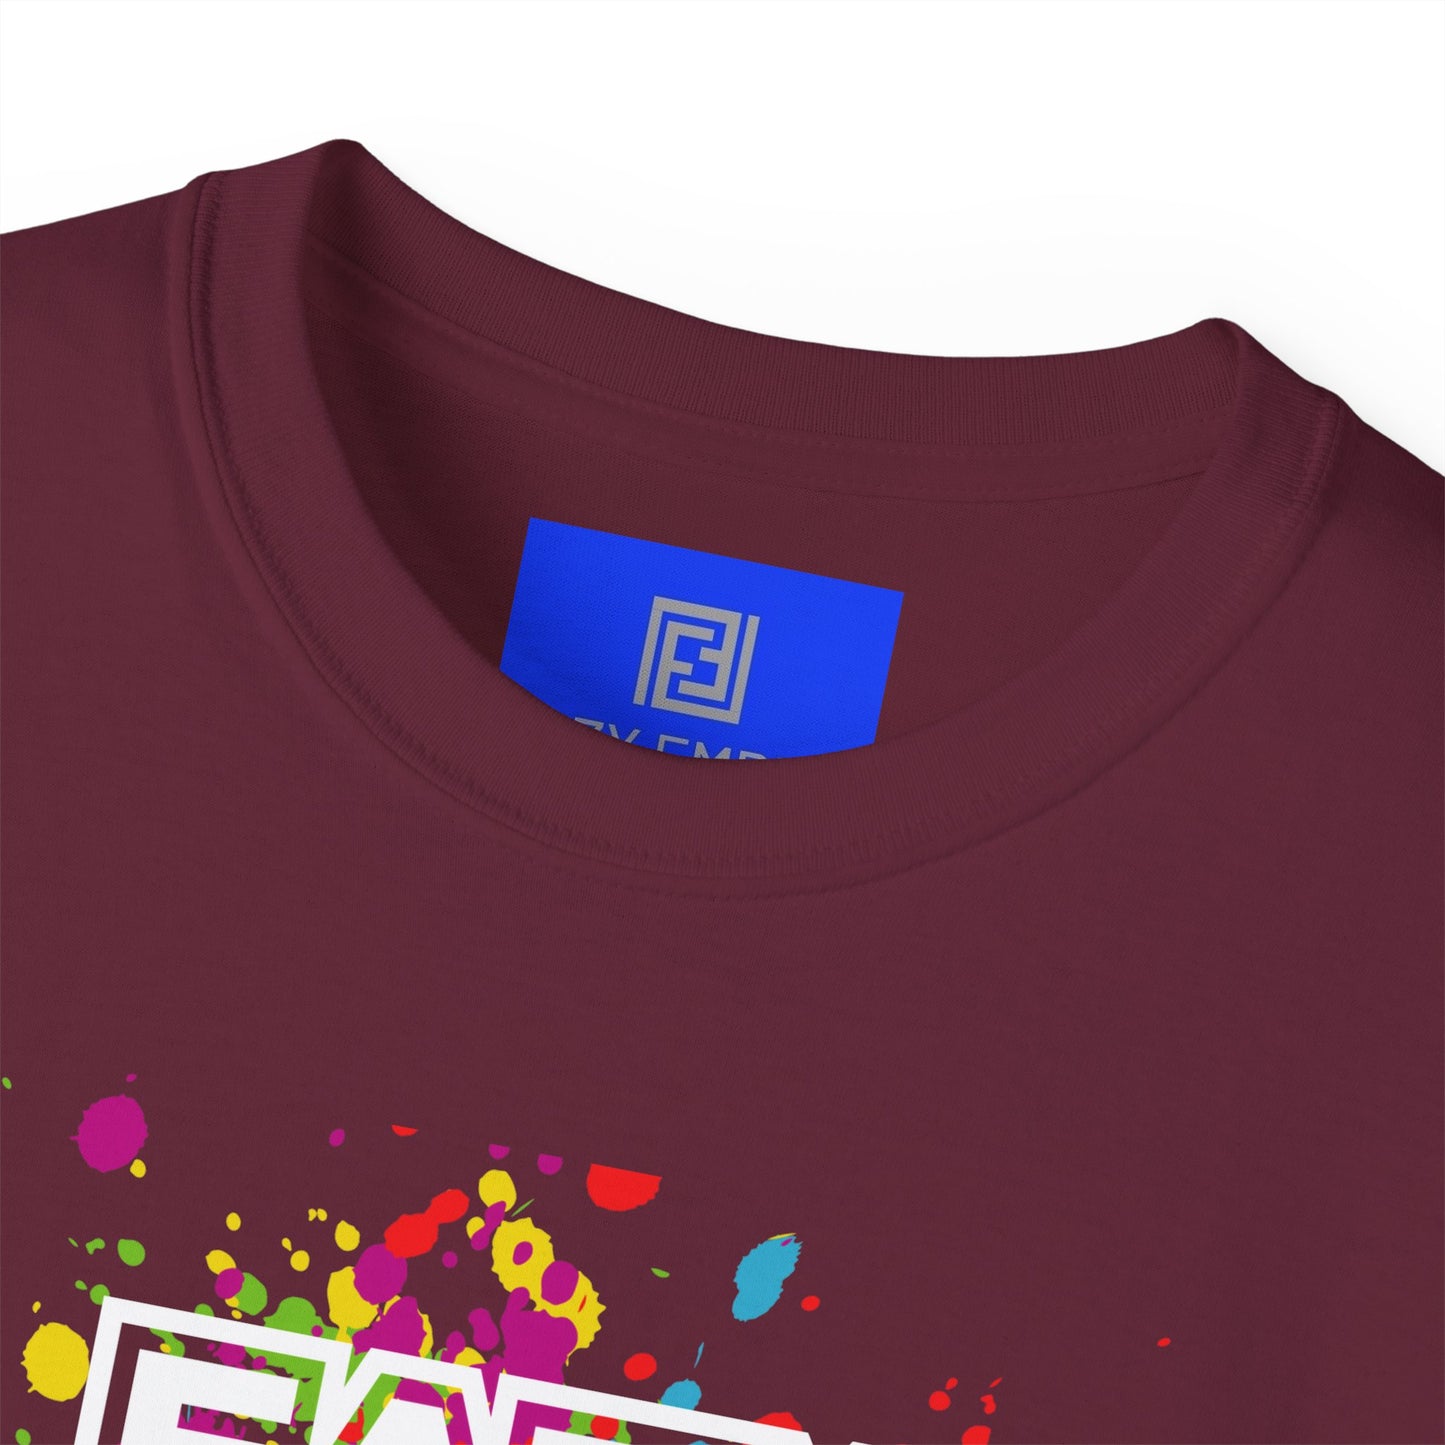 Eazy Empire (Paint) Unisex T-Shirt